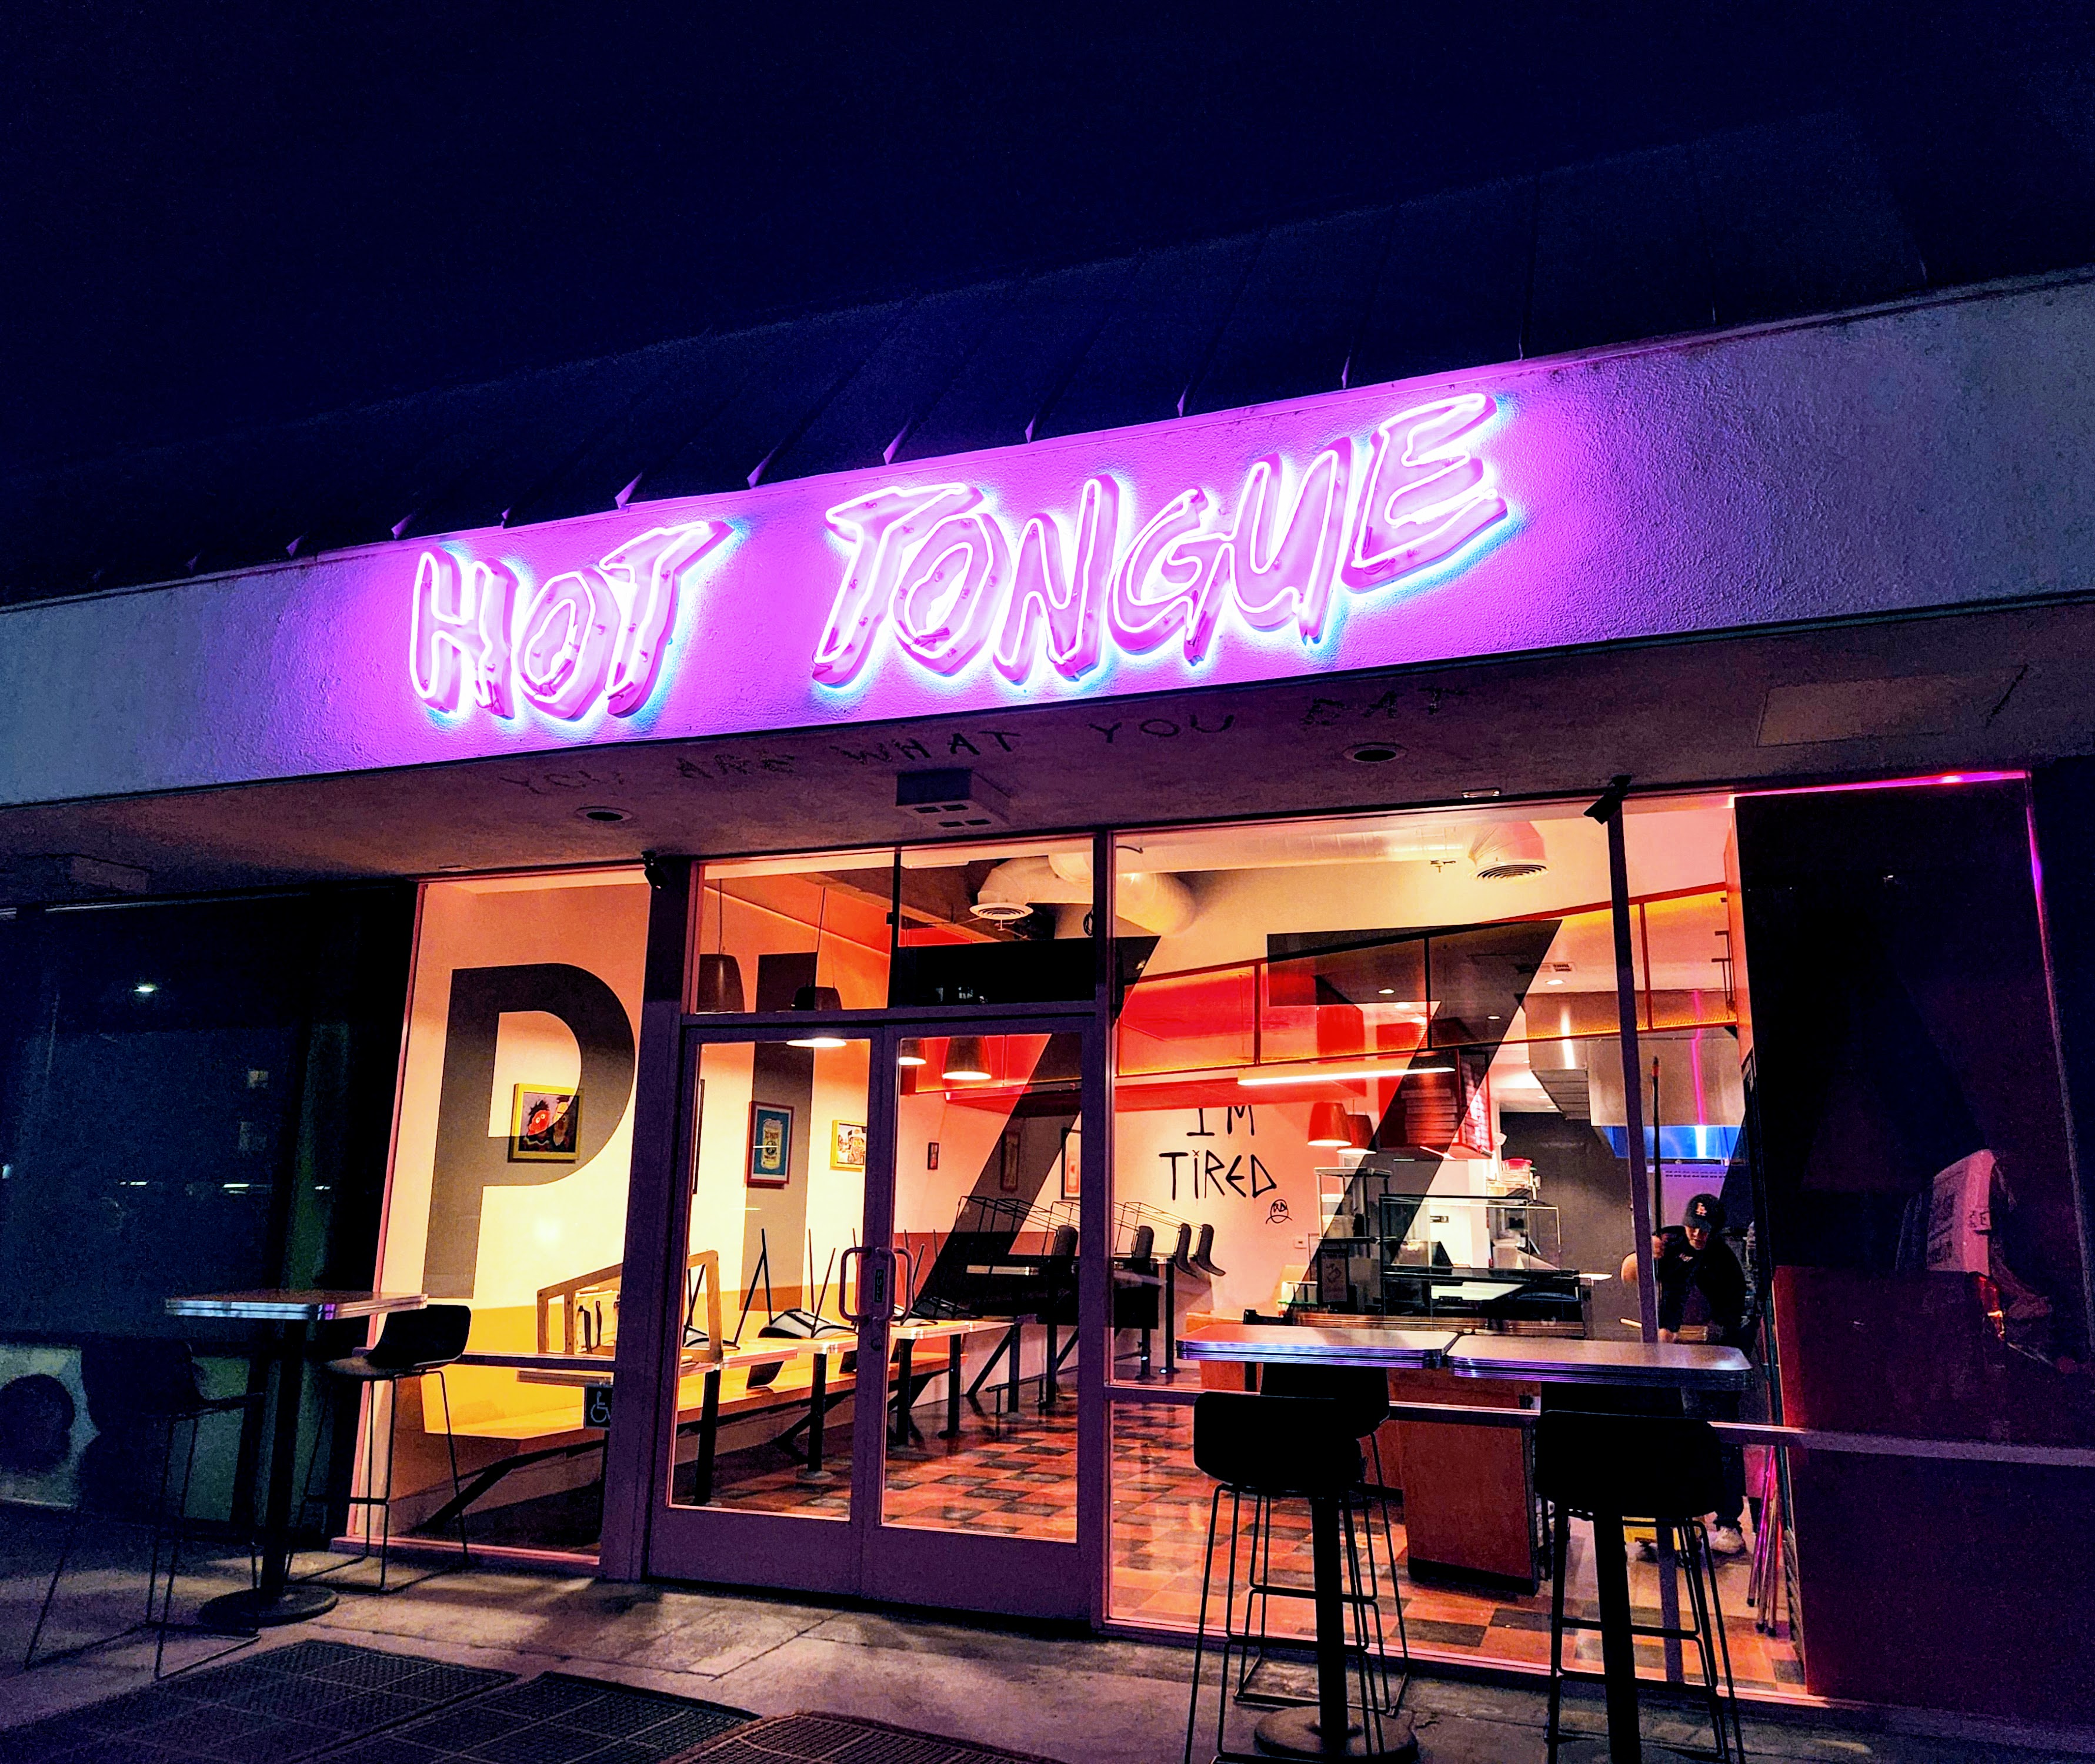 Hot Tongue pizza parlor in Silver Lake, California